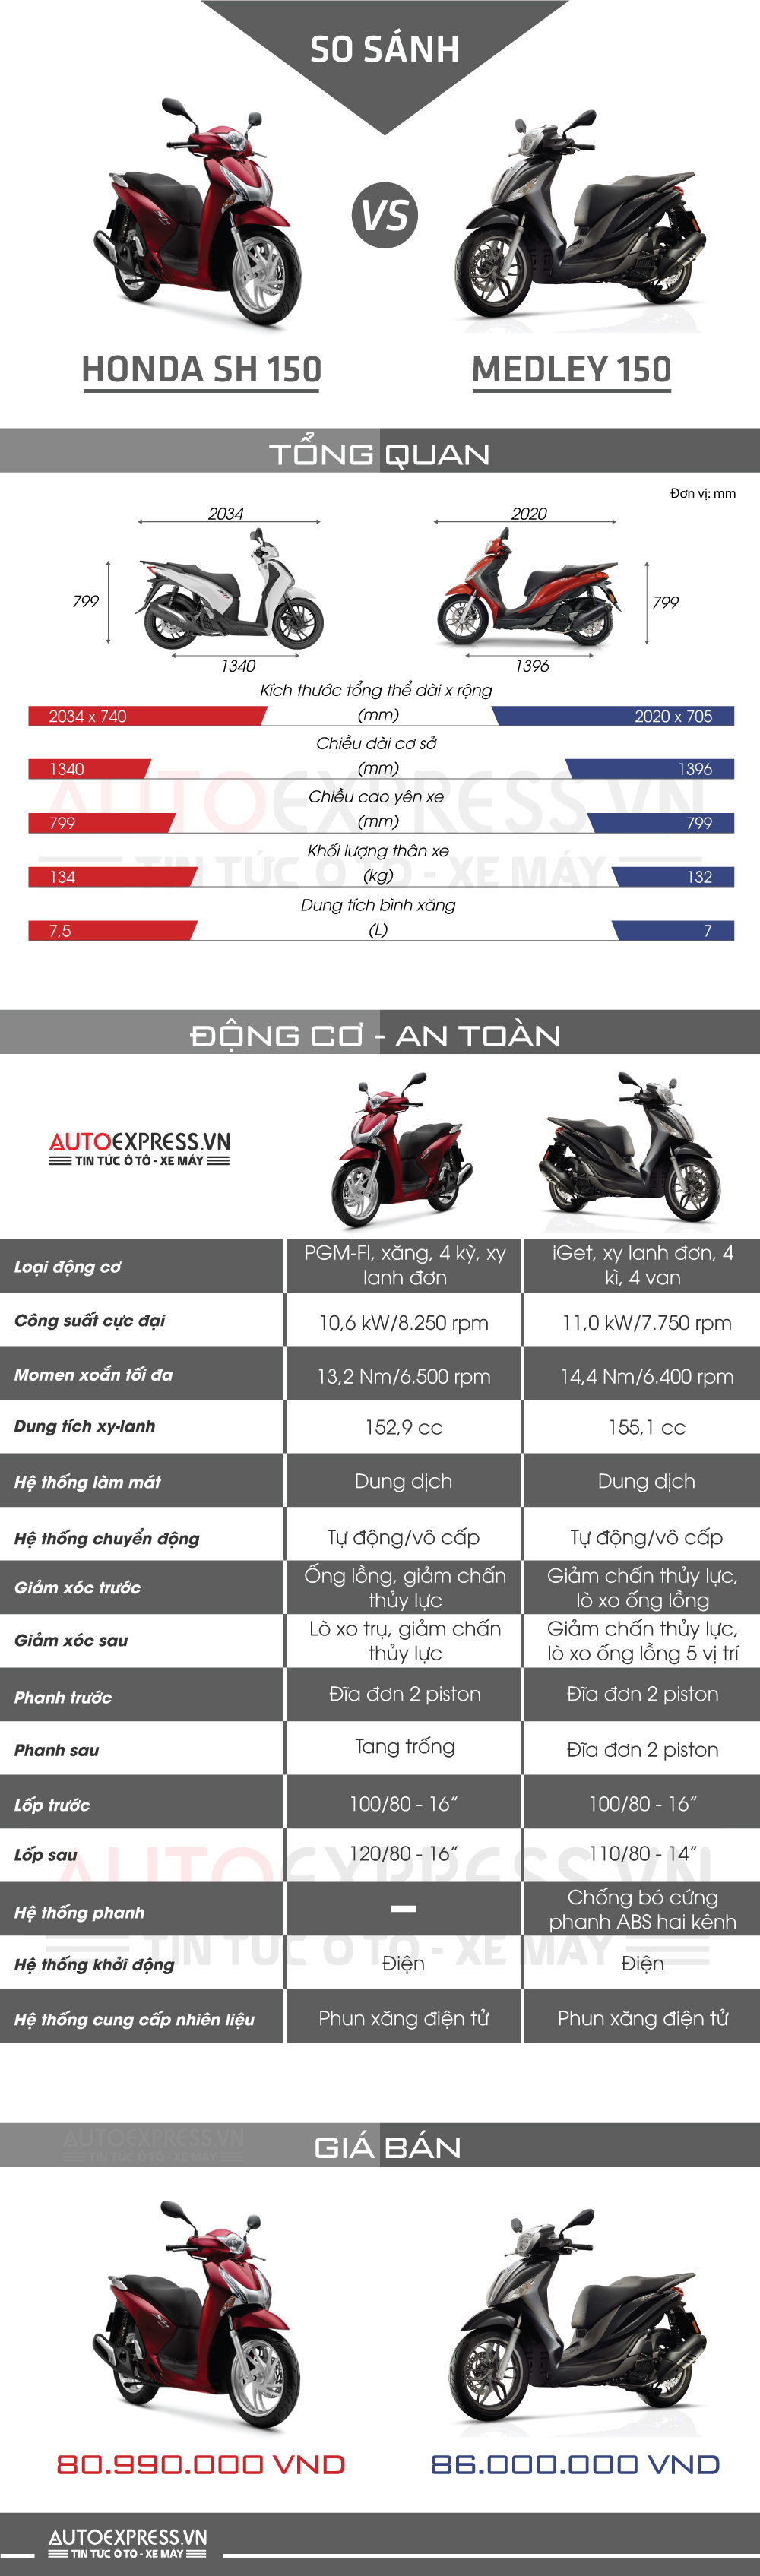 Lựa chọn nào giữa Honda SH 150 và Piaggio Medley 150 tại Việt Nam?